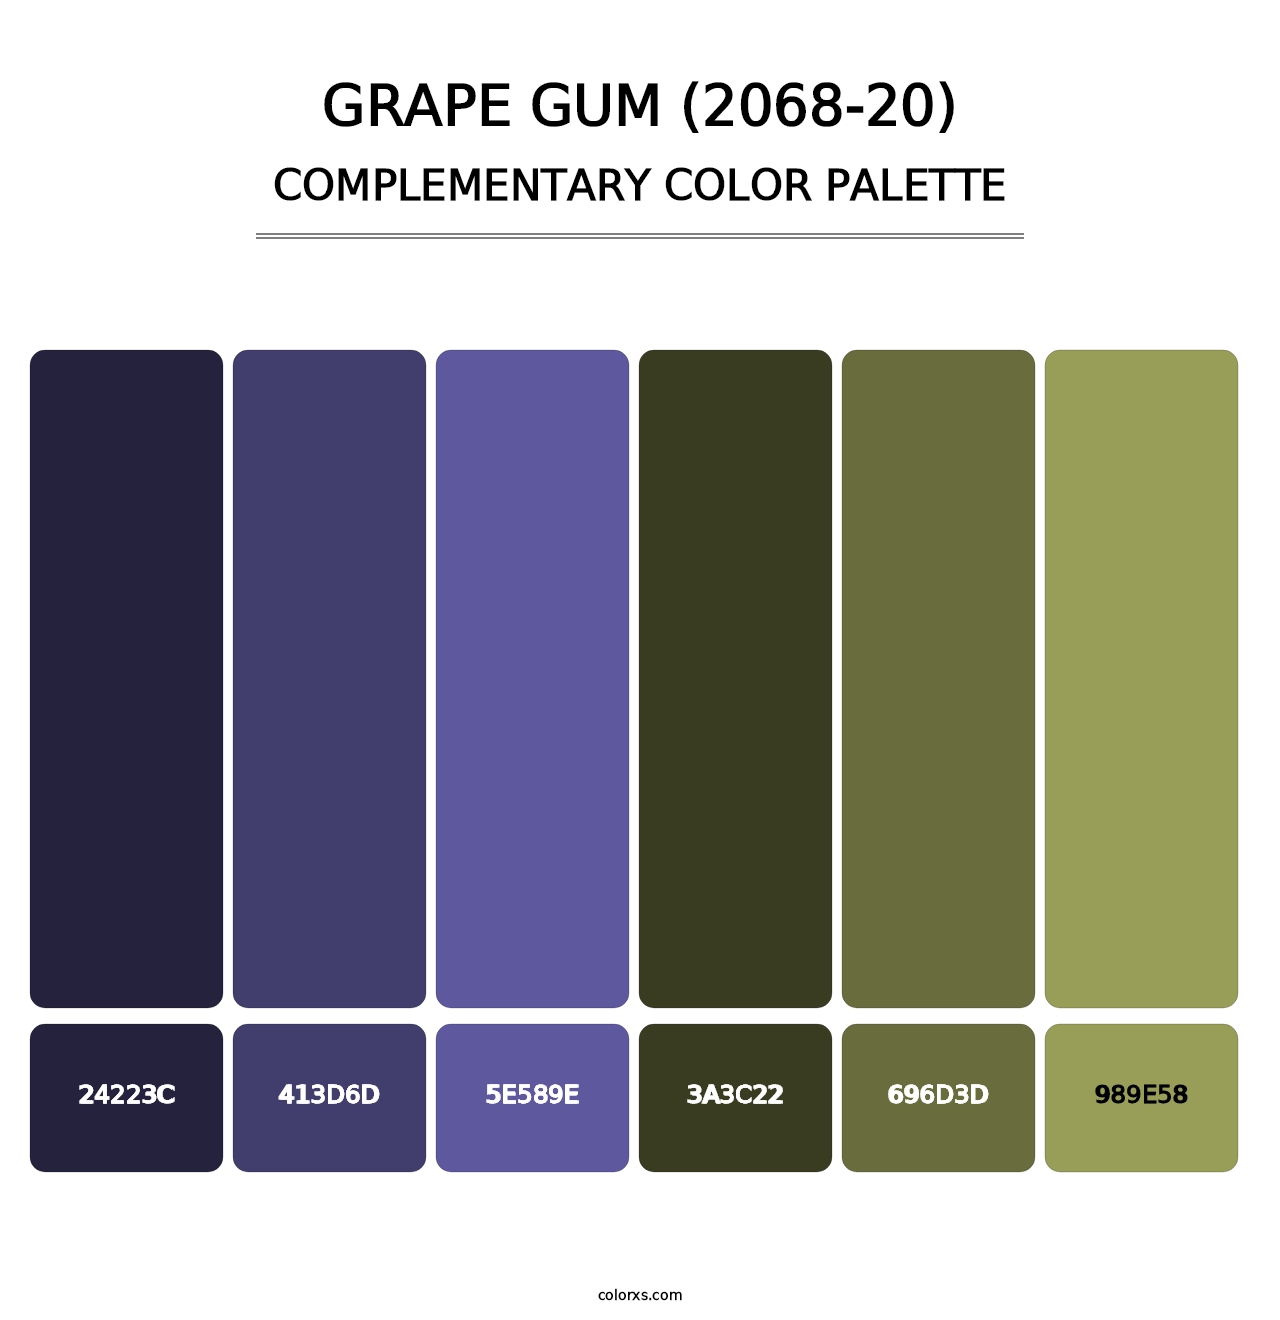 Grape Gum (2068-20) - Complementary Color Palette